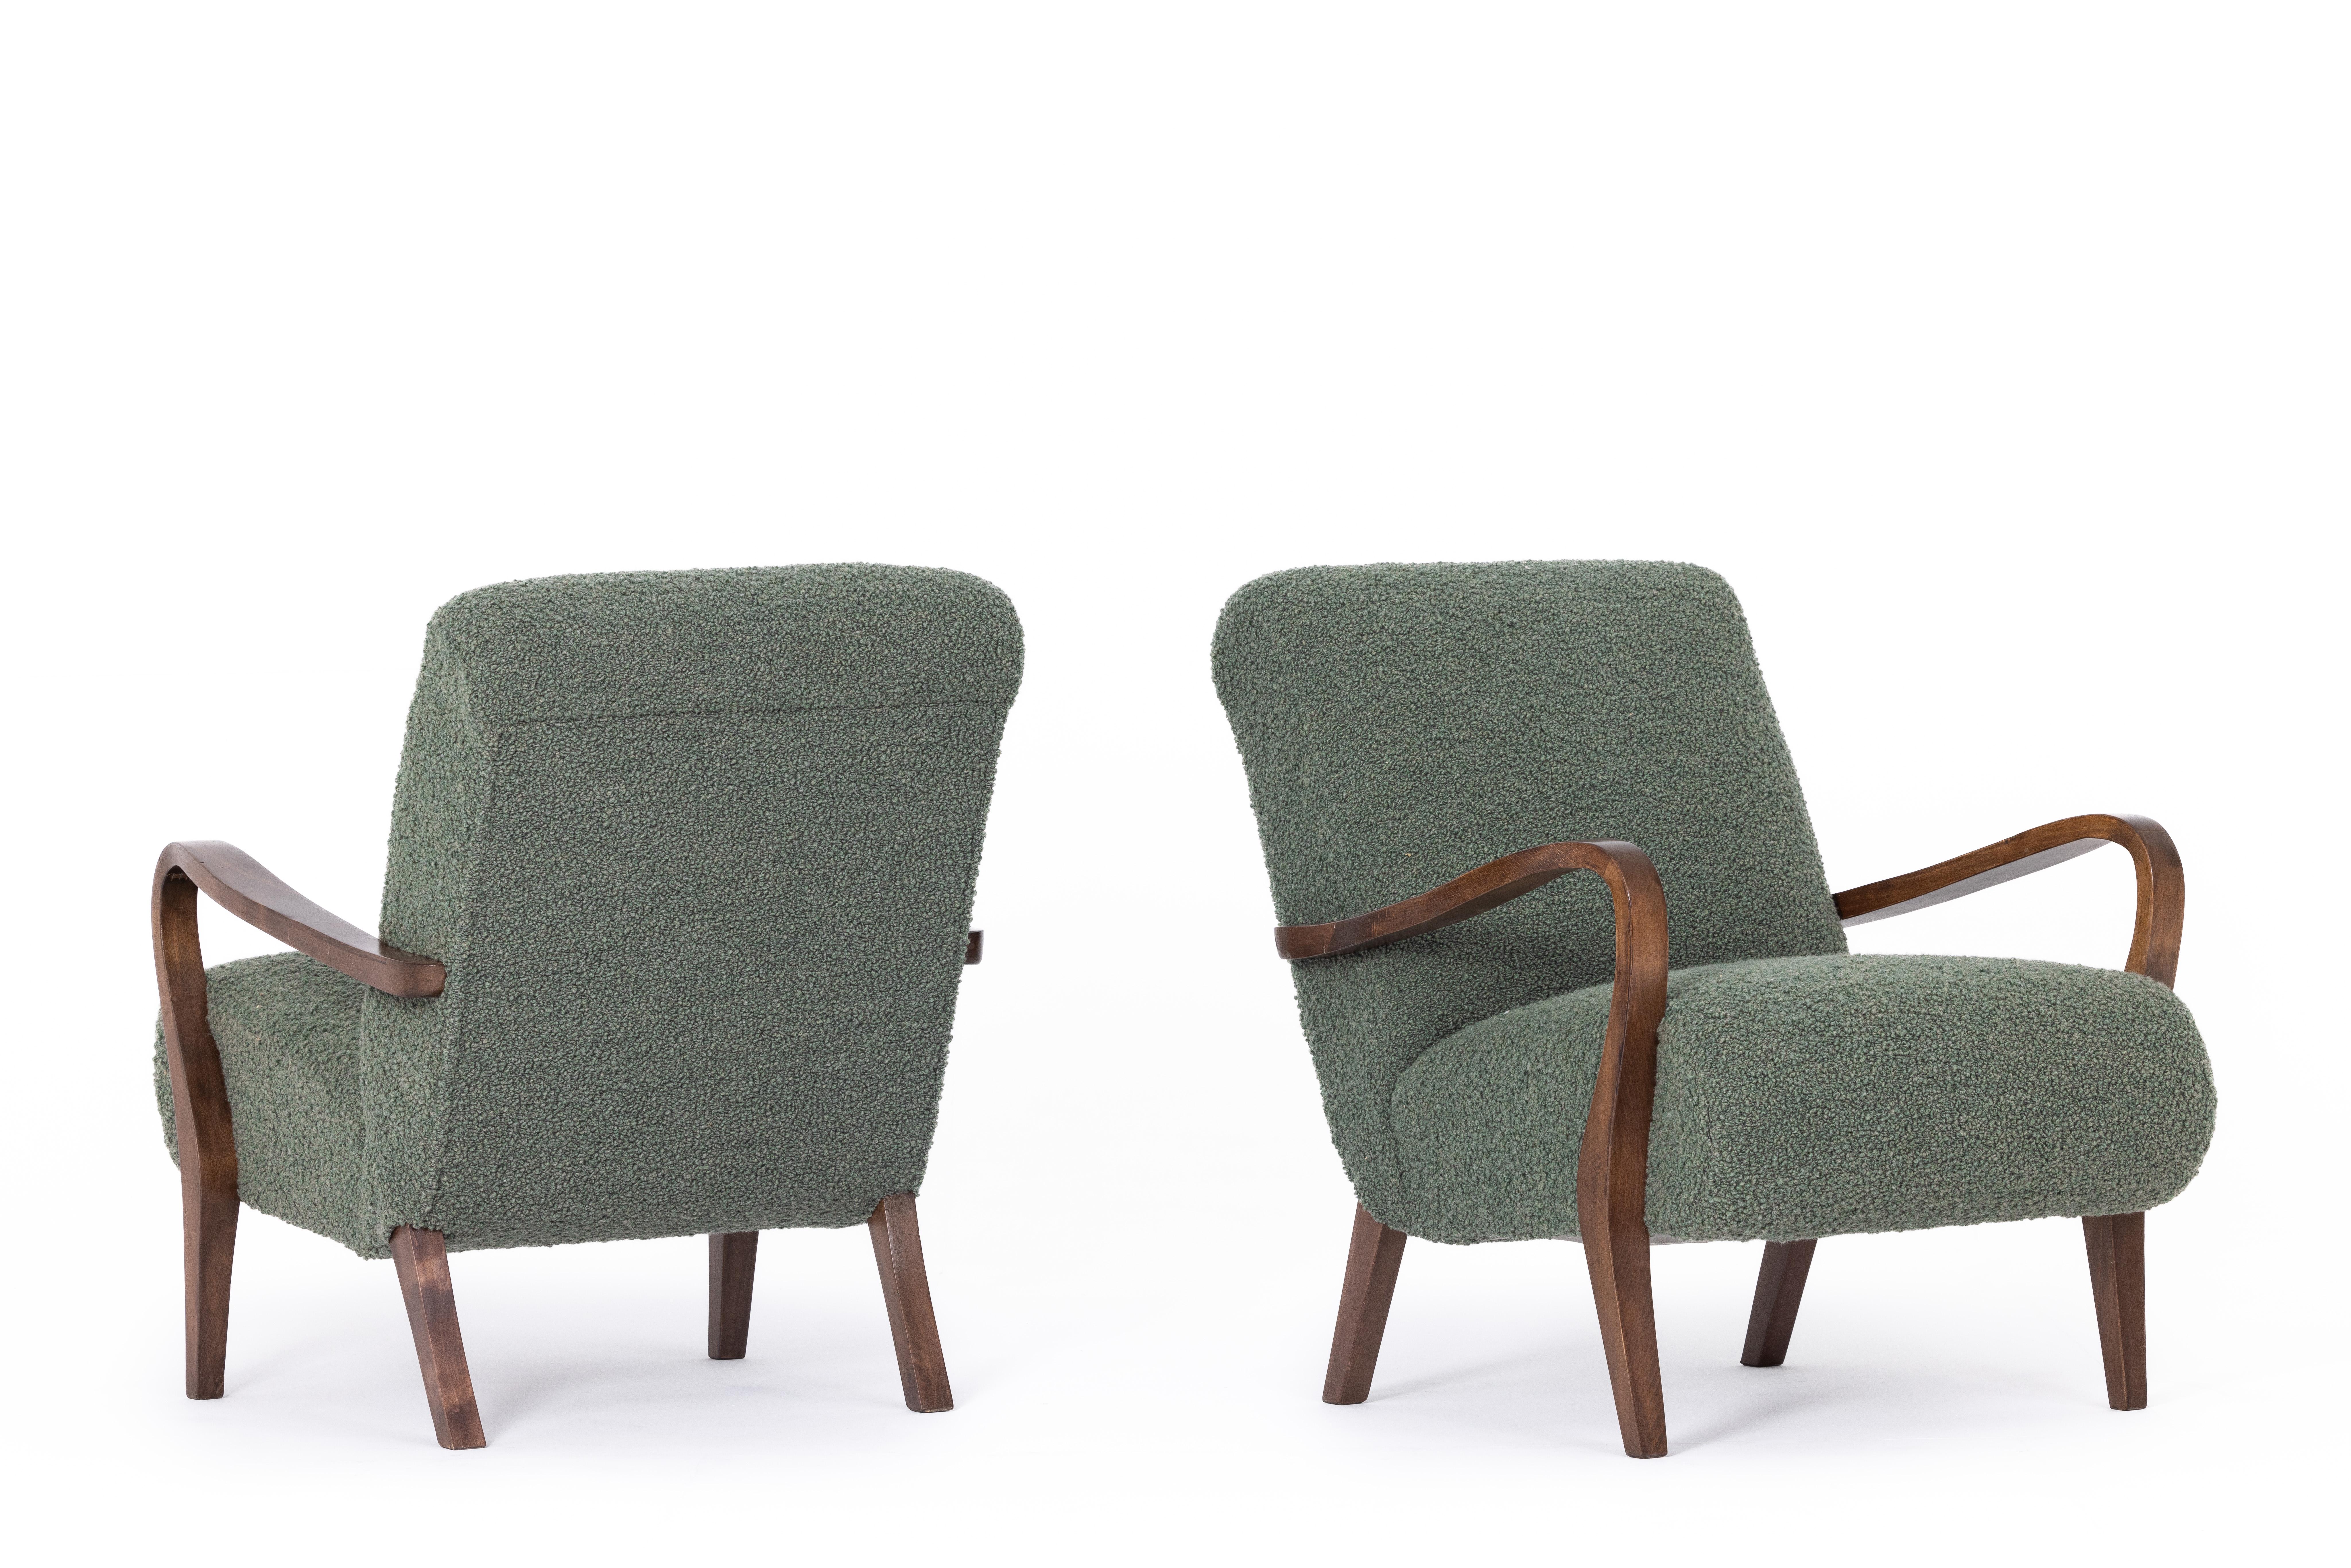 Pair of art deco armchairs, France 1920s, Dedar fabric For Sale 2